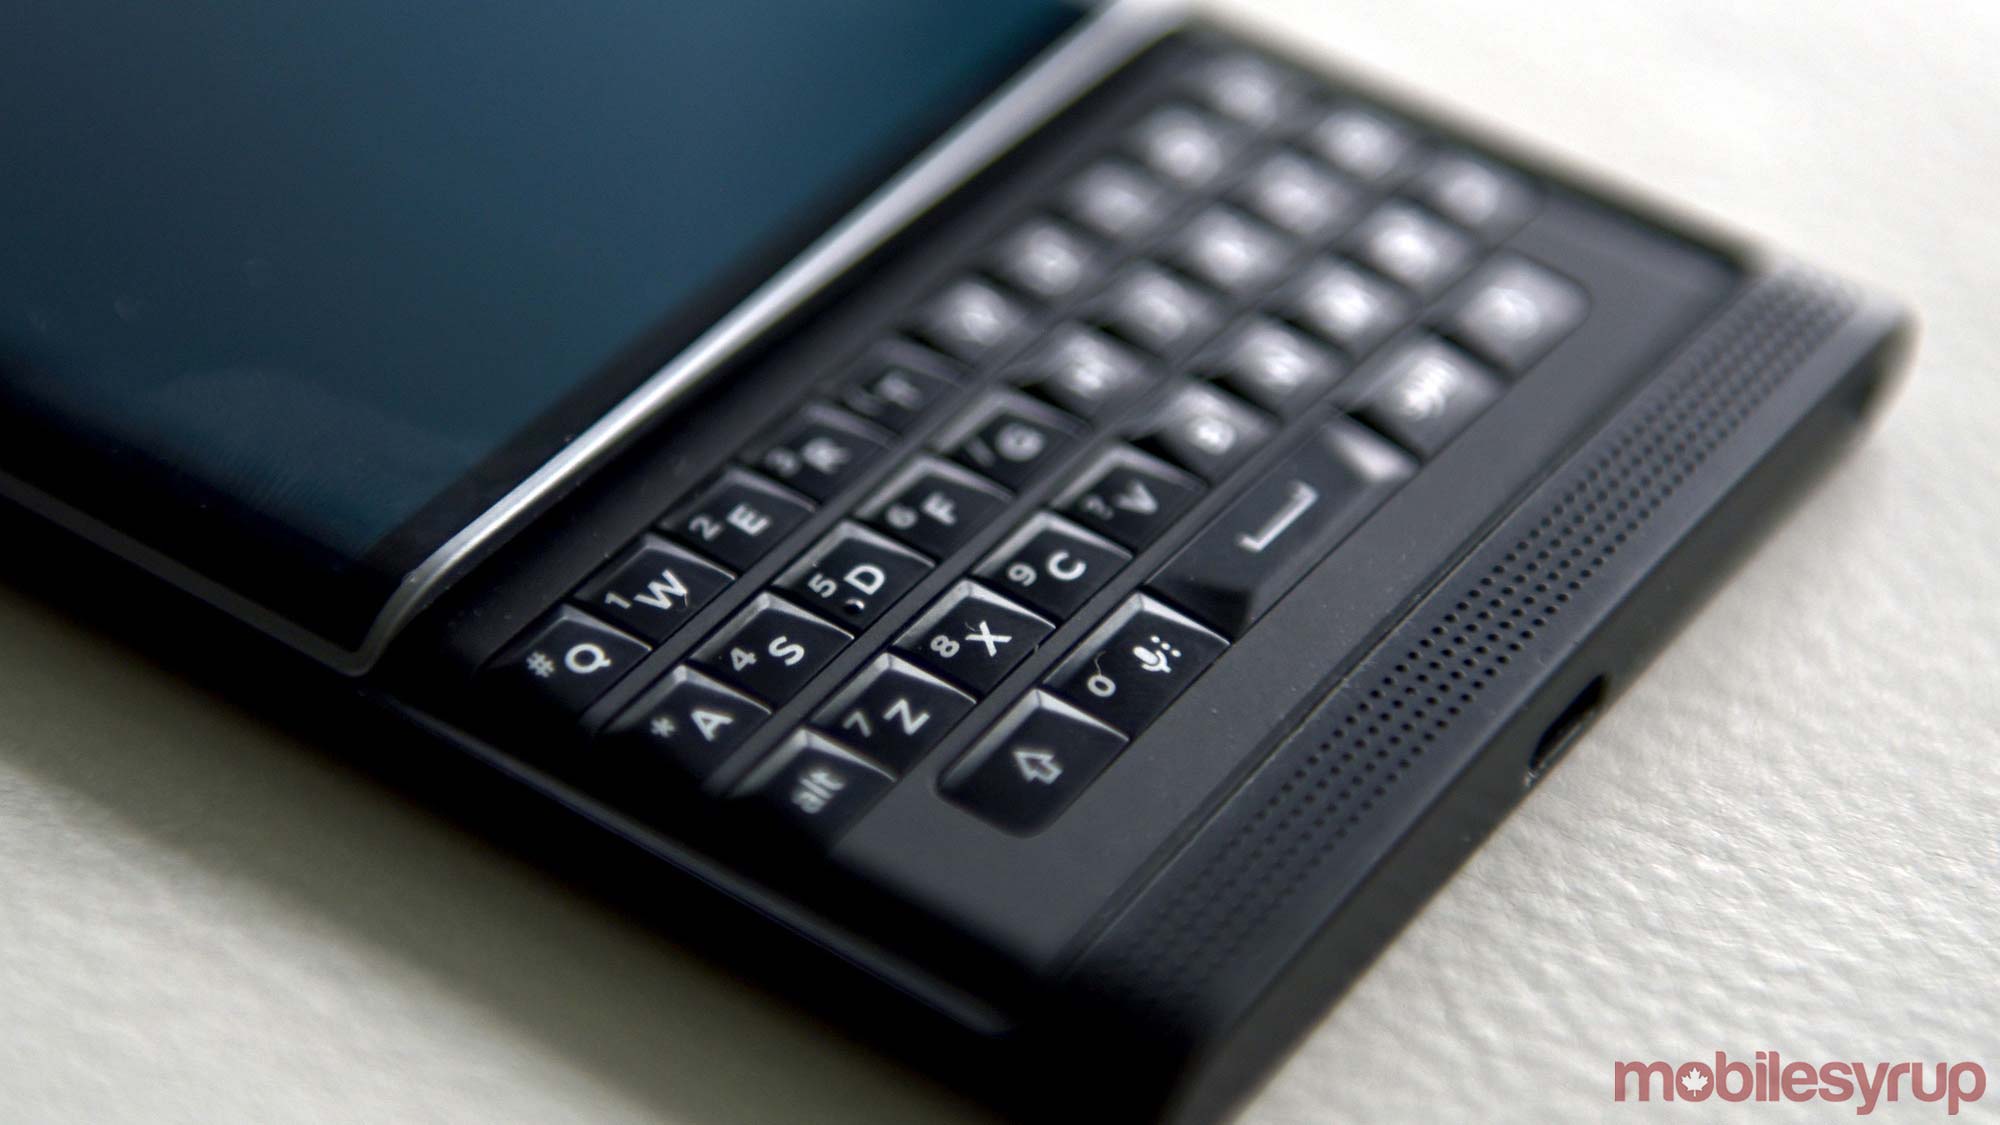 priv keyboard - blackberry priv sale